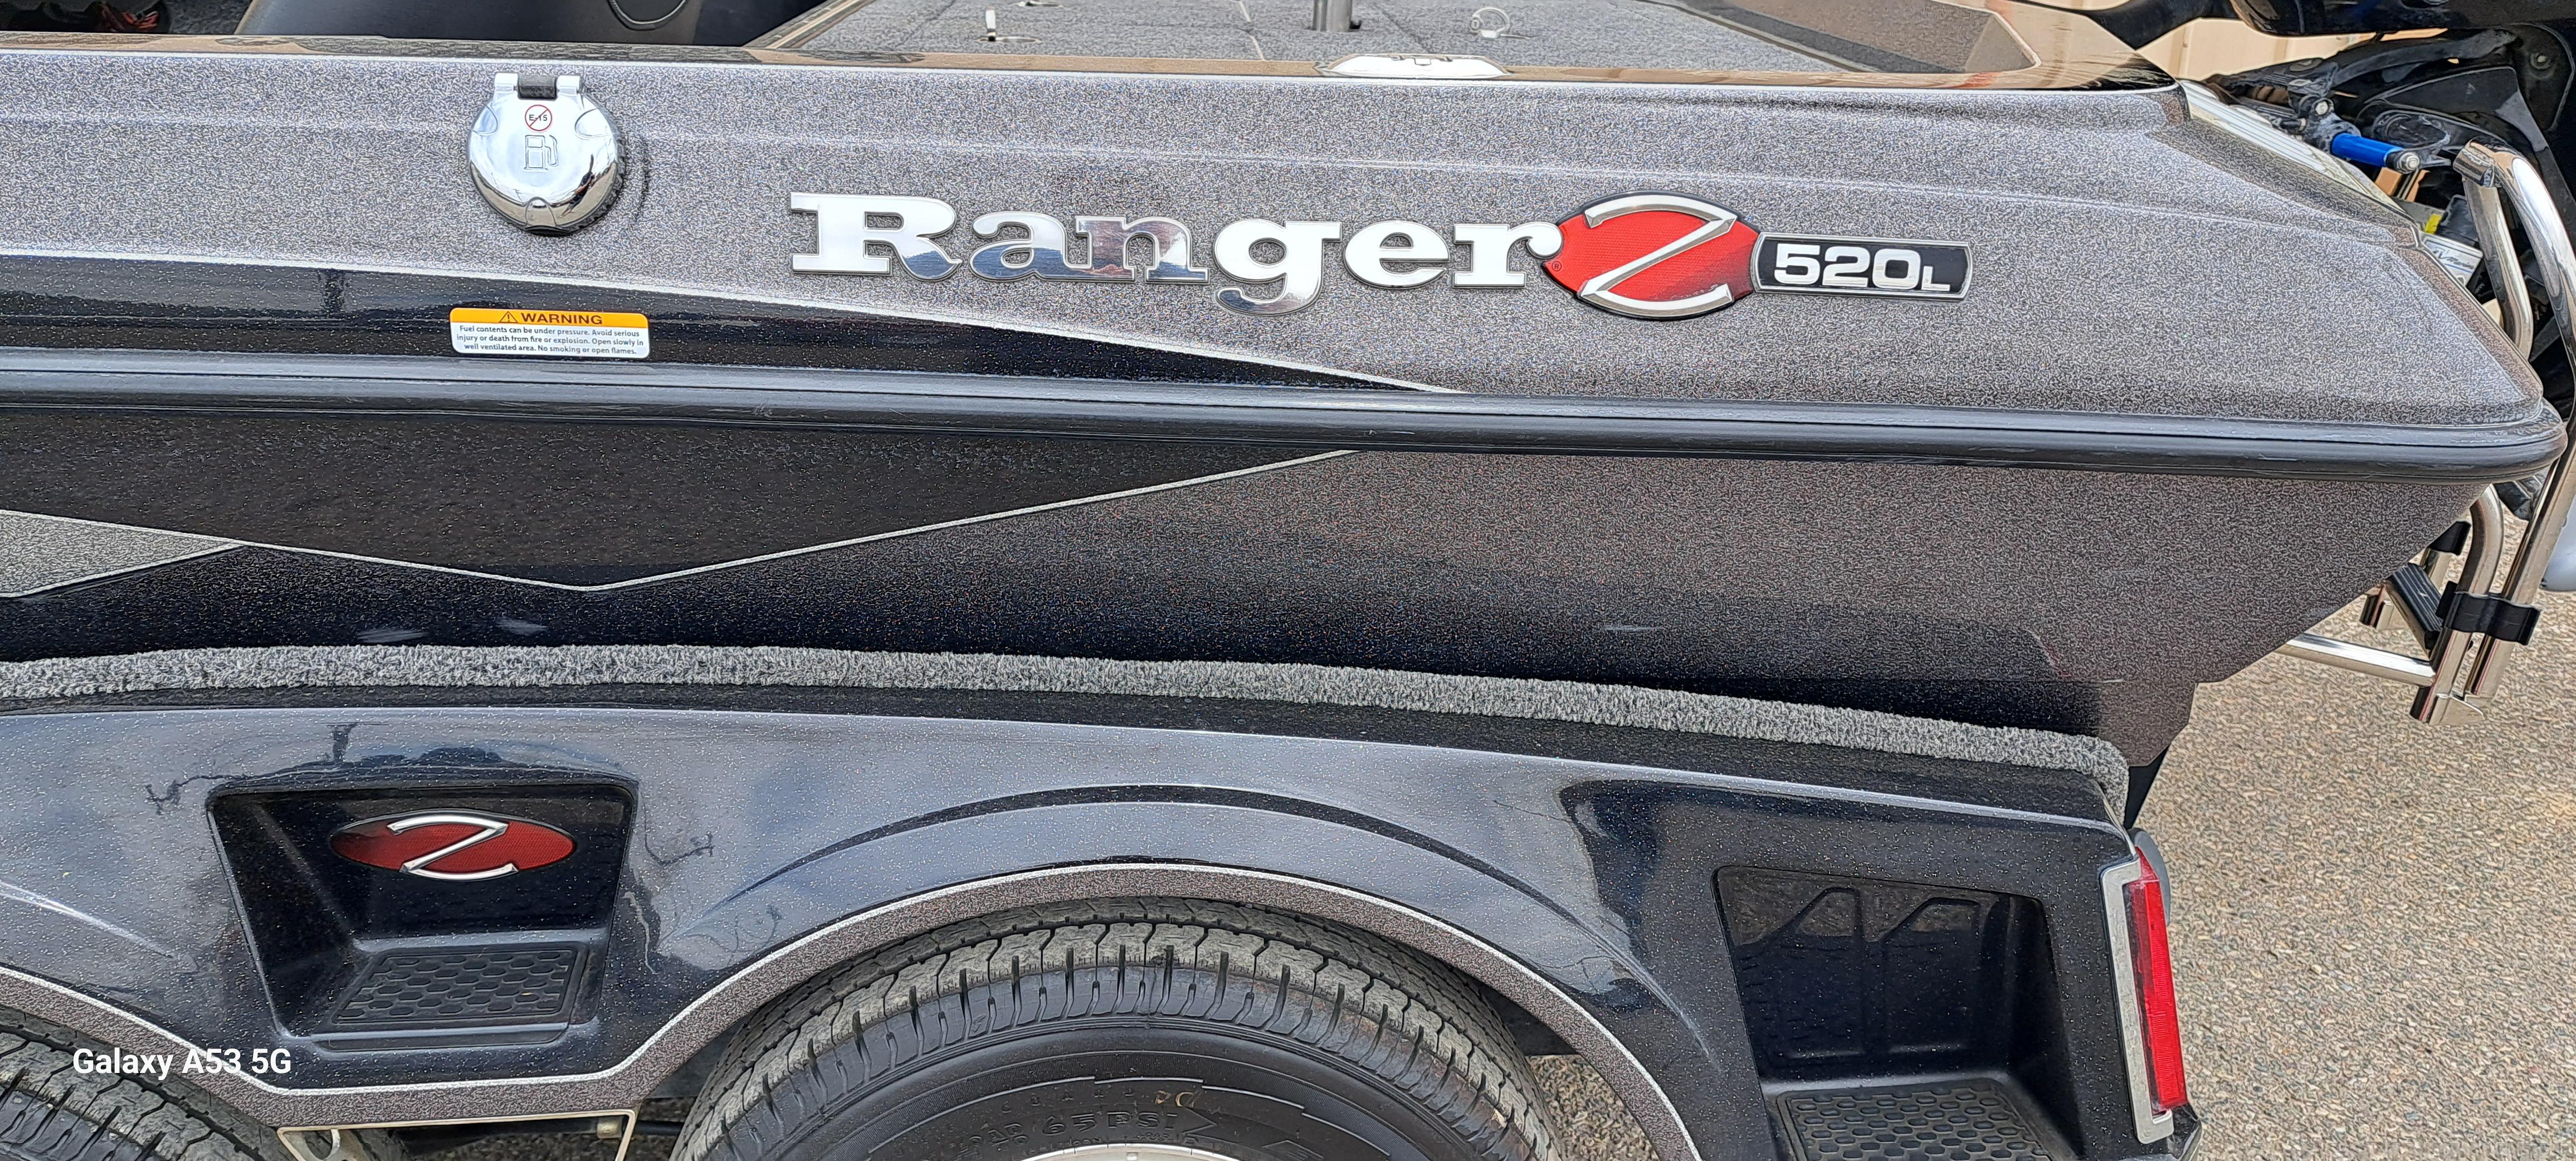 Ranger Z520L